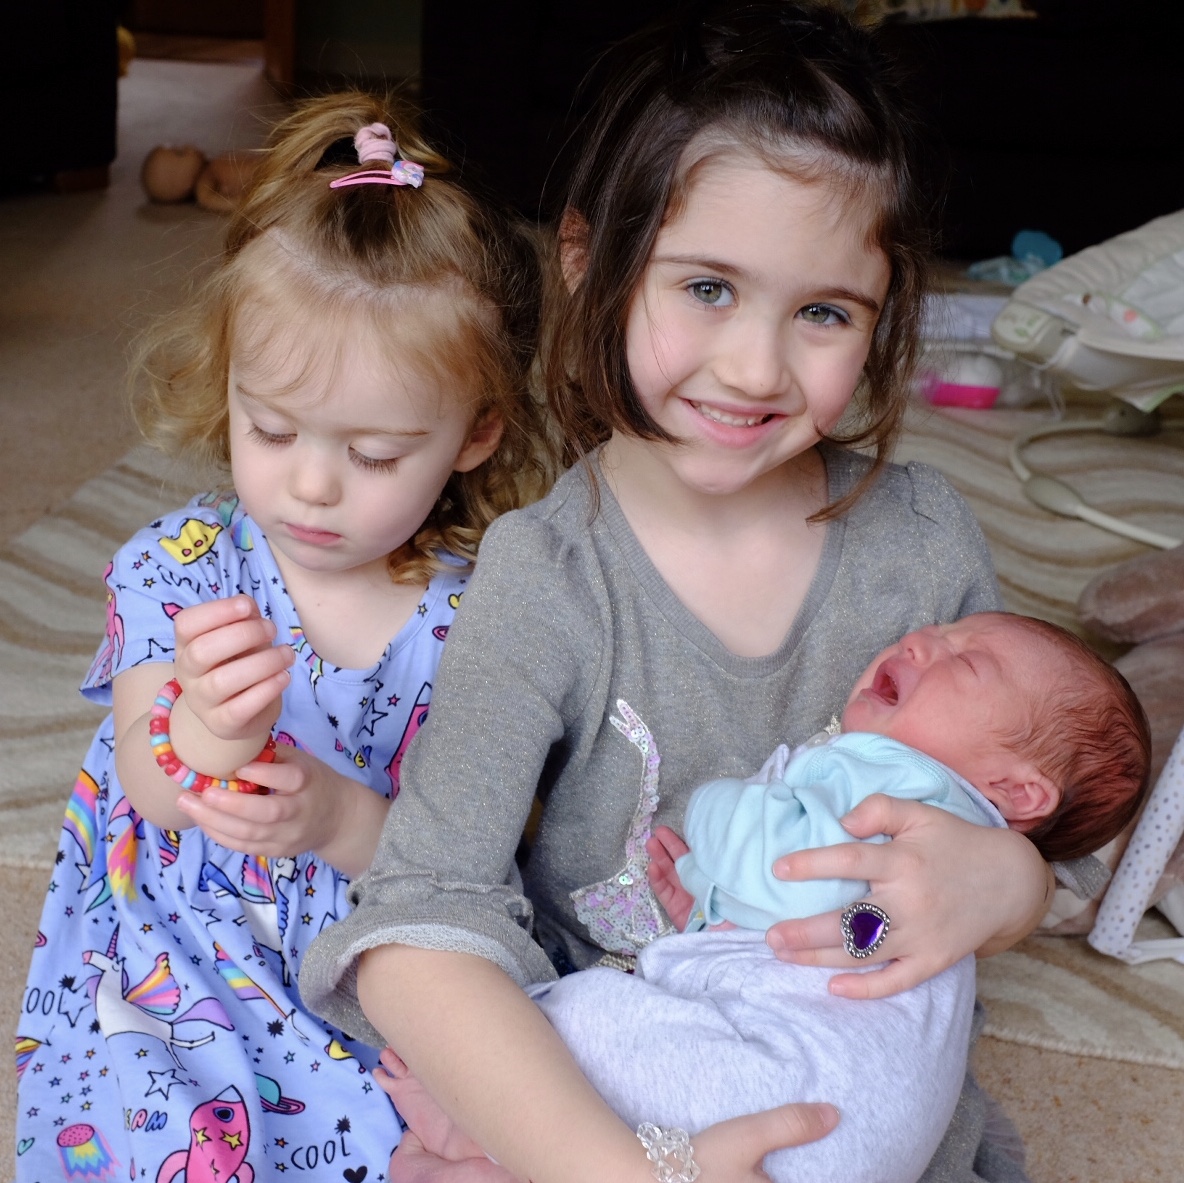 10 Realities of Having Three Children